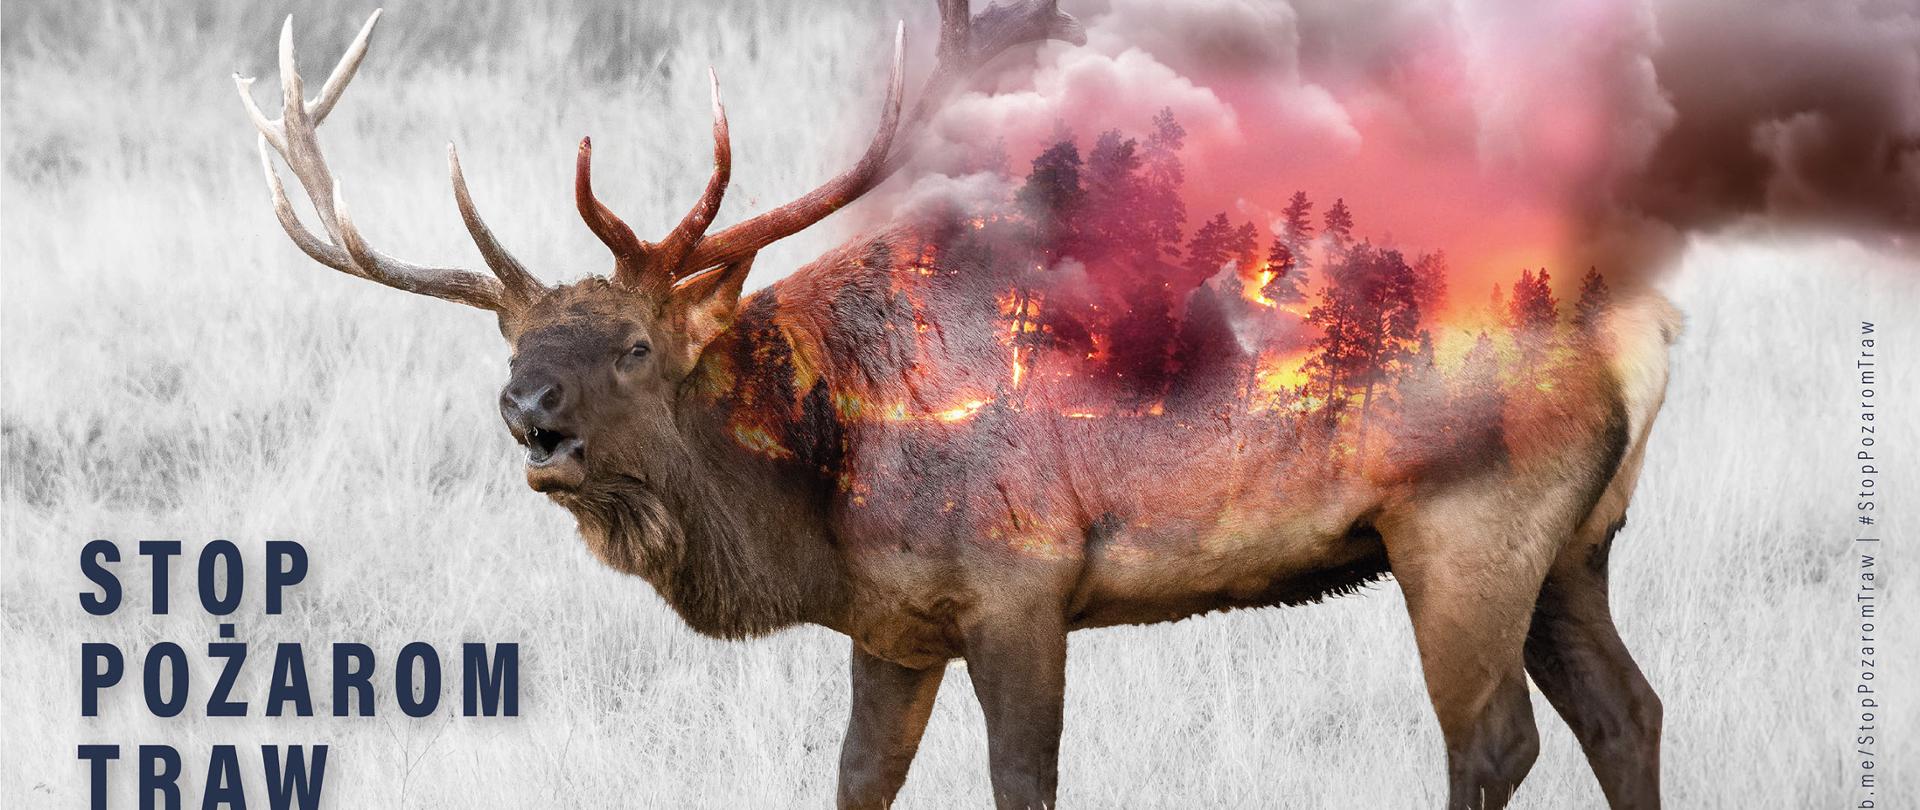 Plakat przedstawia jelenia na pastwisku, na grzbiecie zwierzęcia przedstawiony jest pożar traw i lasu z dużą ilością dymu. Plakat podpisany jest Stop pożarom traw.